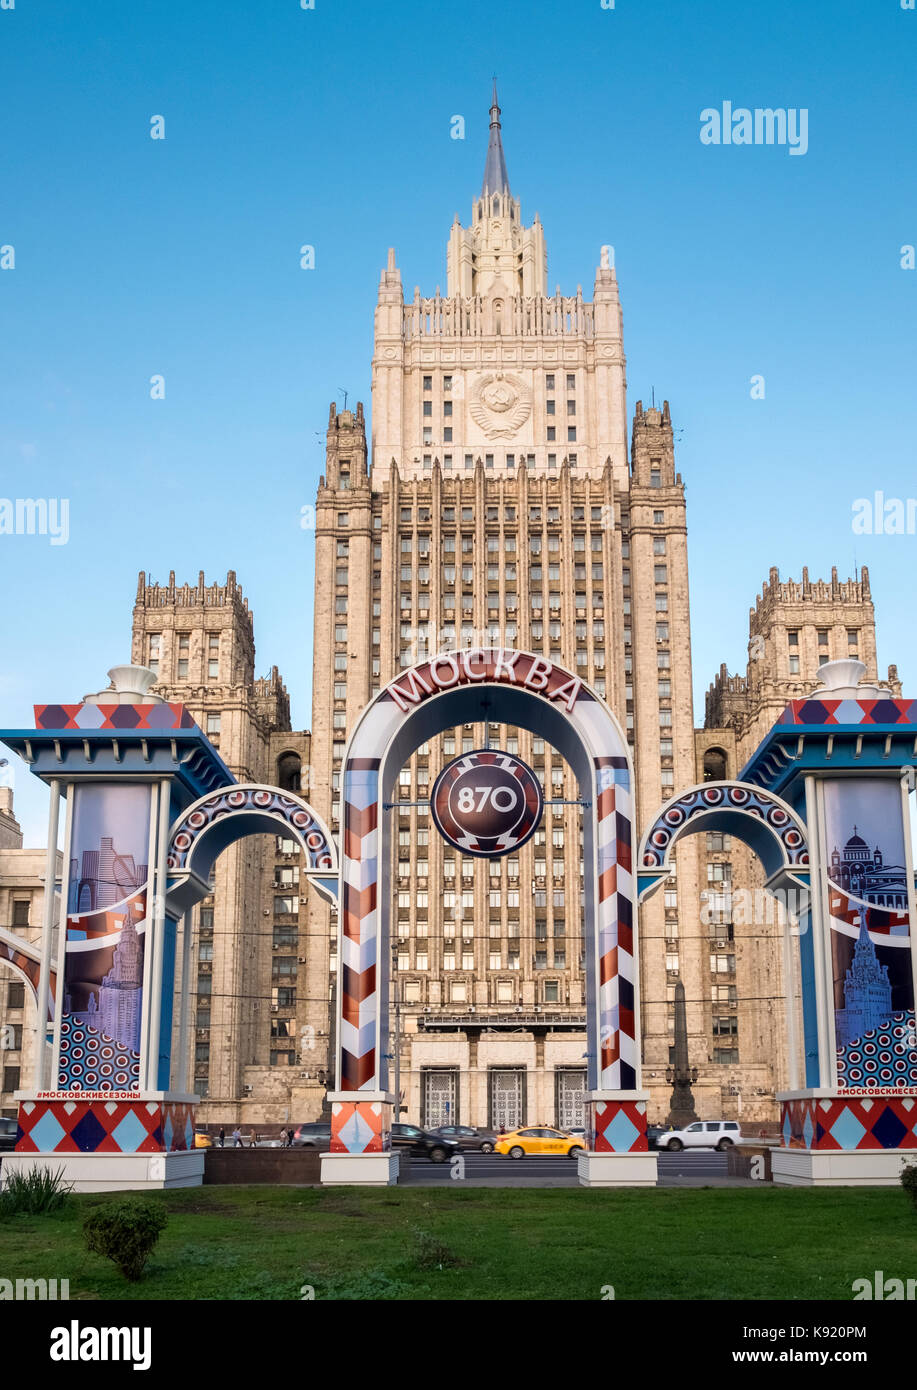 L'extérieur de l'architecture du ministère des affaires étrangères de la Russie, bâtiment principal de smolenskaya pl sennaya, Moscou, Russie. Banque D'Images